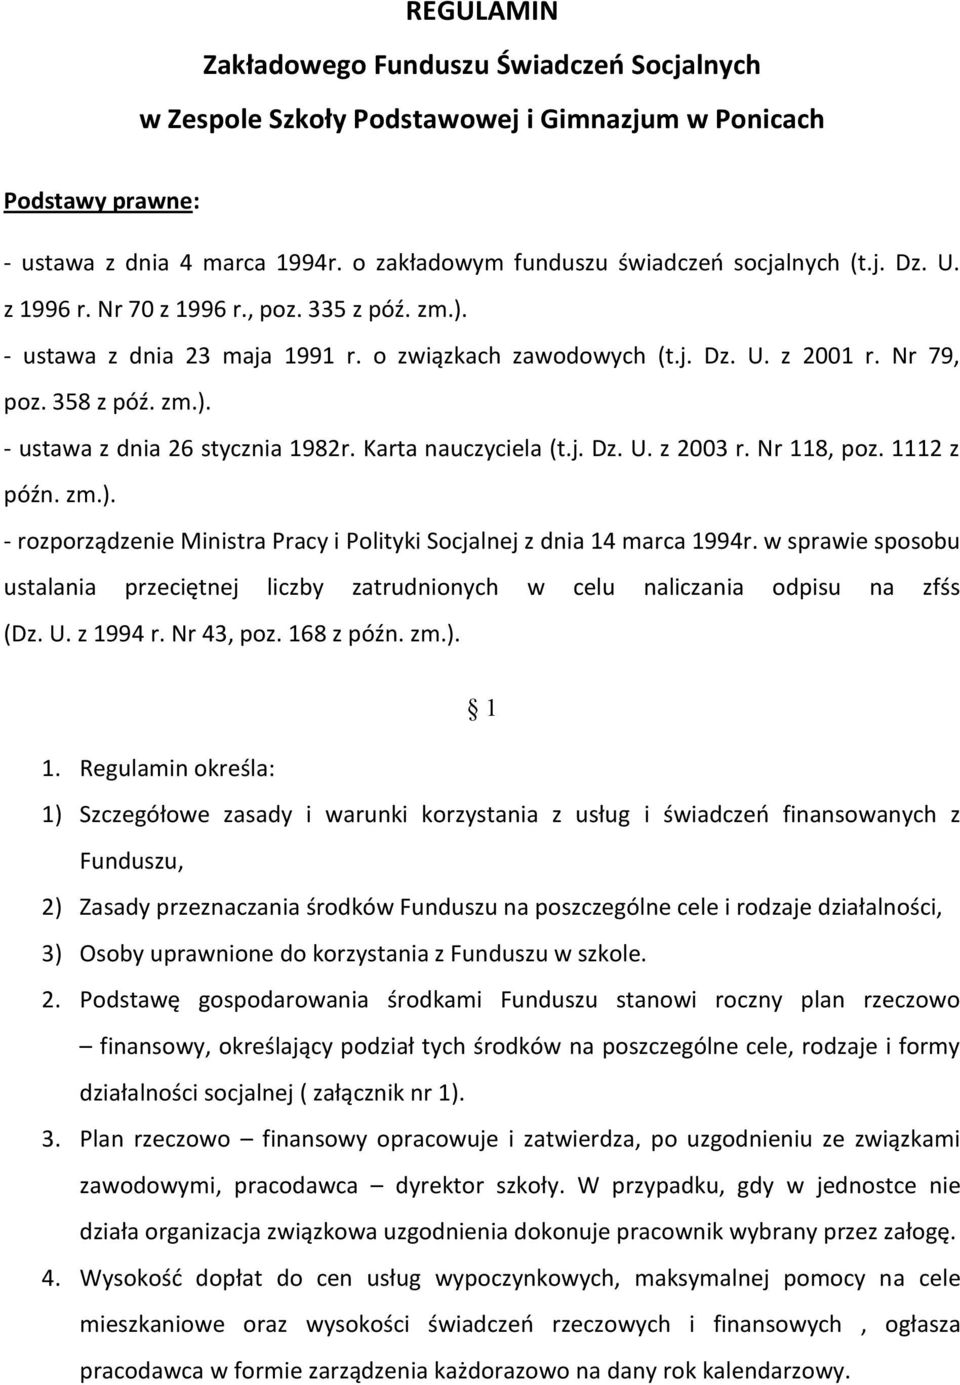 Karta nauczyciela (t.j. Dz. U. z 2003 r. Nr 118, poz. 1112 z późn. zm.). - rozporządzenie Ministra Pracy i Polityki Socjalnej z dnia 14 marca 1994r.